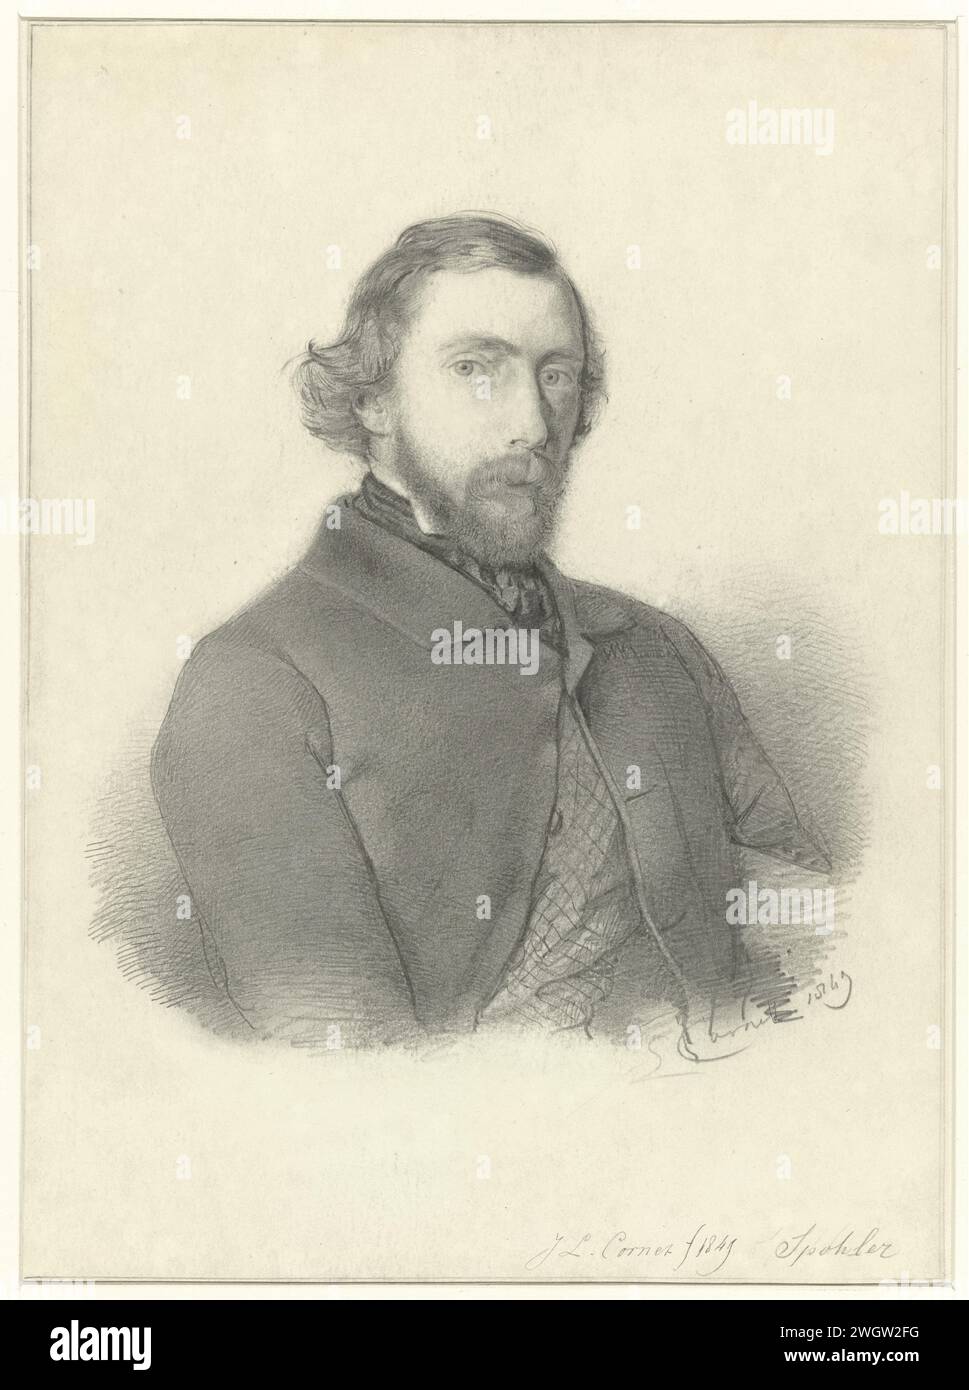 Portrait de Jan Jacob Spohler, Jacobus Ludovicus Cornet, 1849 papier à dessin. portrait au crayon, autoportrait d'artiste. personnes historiques Banque D'Images